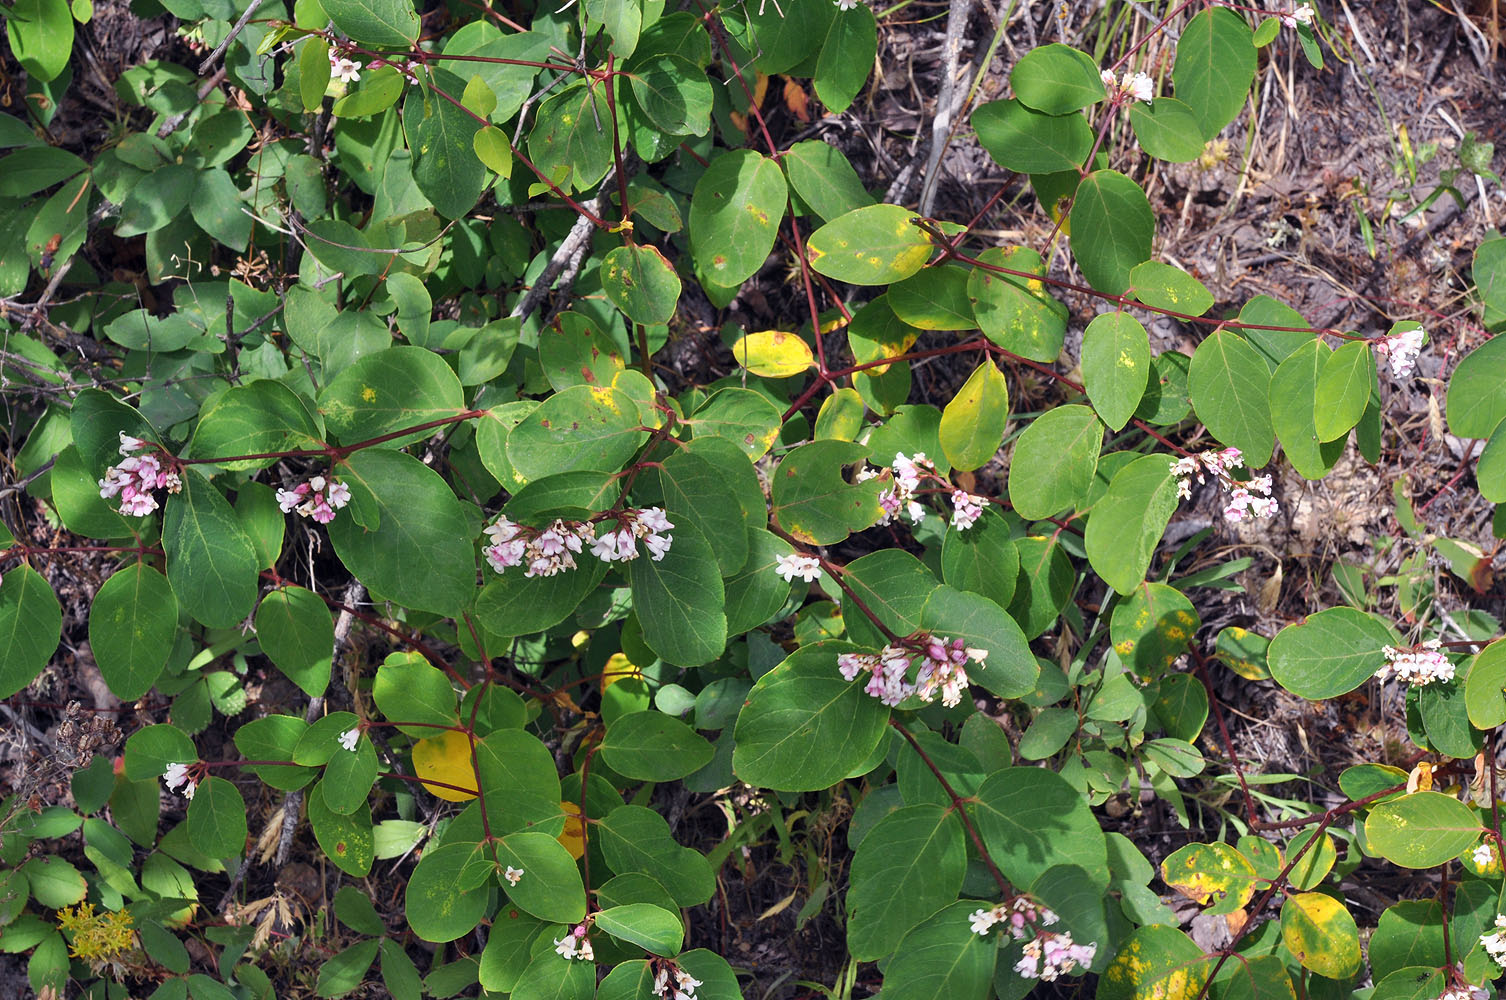 Flora of Eastern Washington Image: Apocynum androcaemifolium